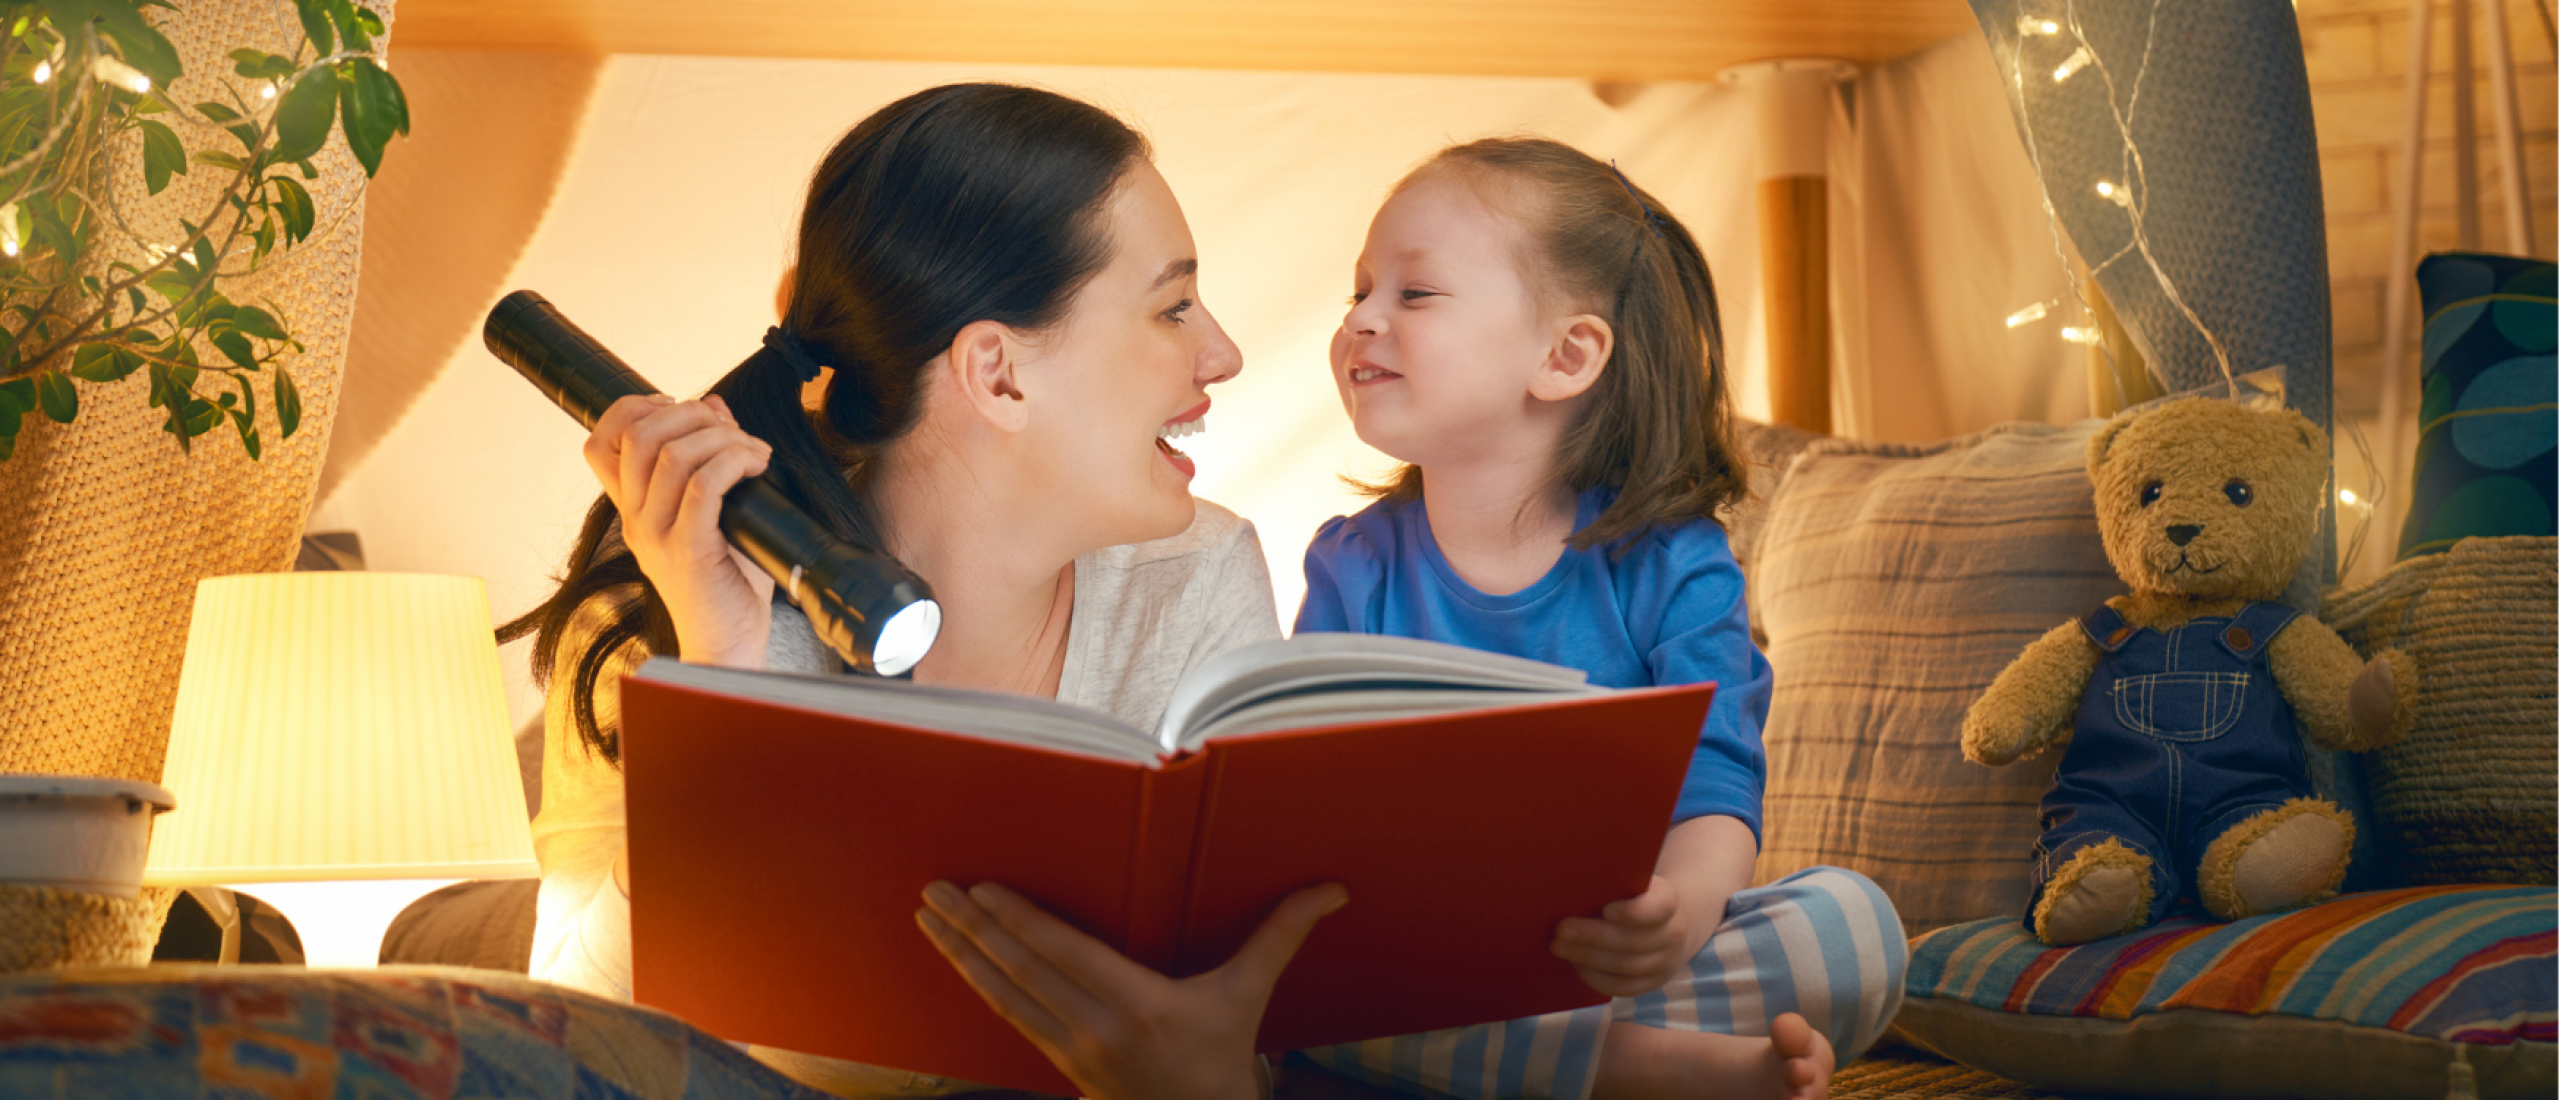 Hoe je je kind kunt stimuleren om tijdens de vakantie te lezen?